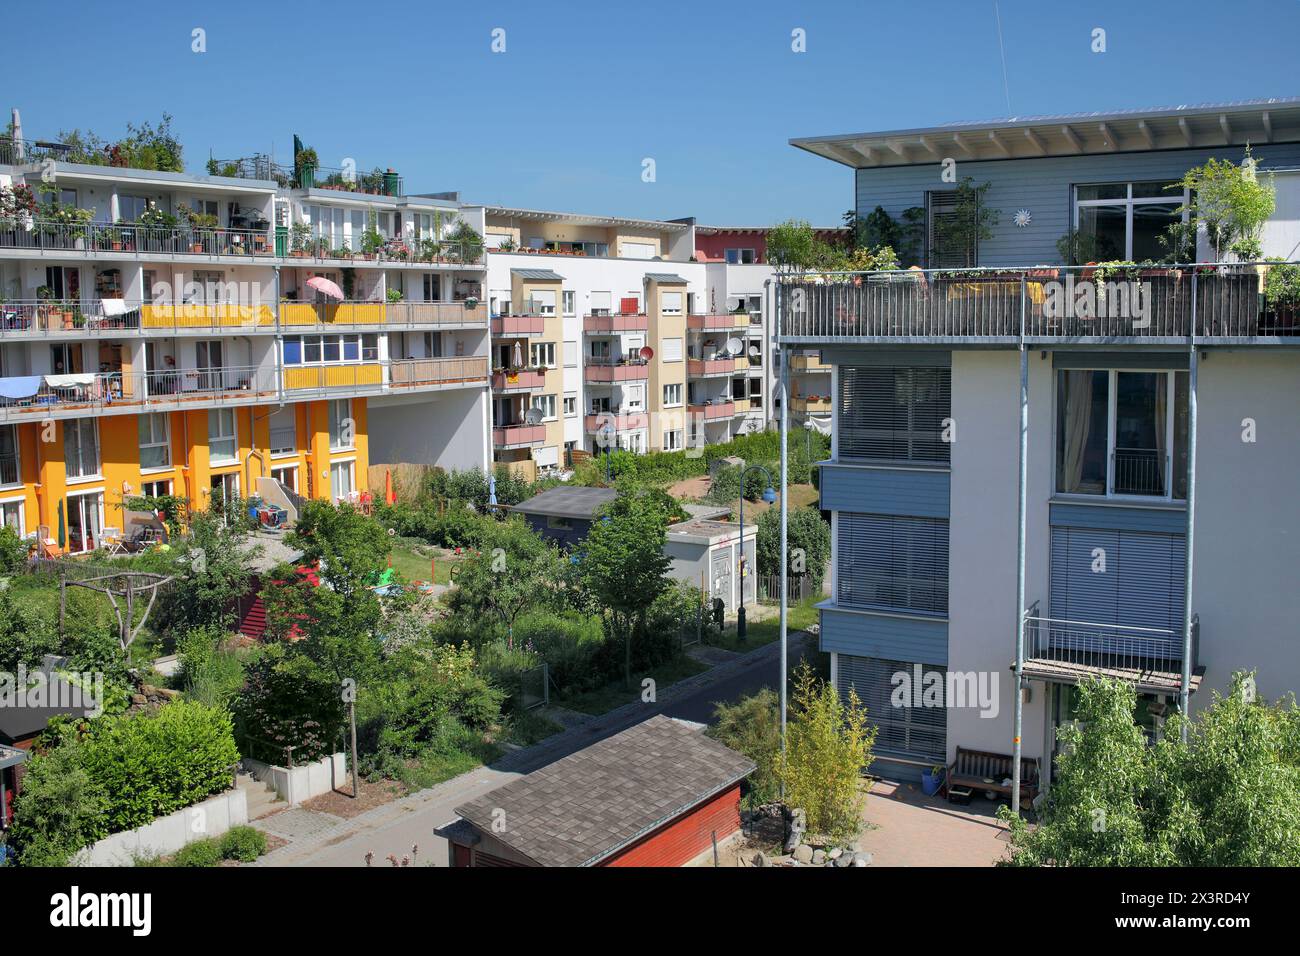 Abitazioni e giardini lussureggianti a Vauban, un sobborgo sostenibile di Friburgo in Breisgau, Germania. Foto Stock